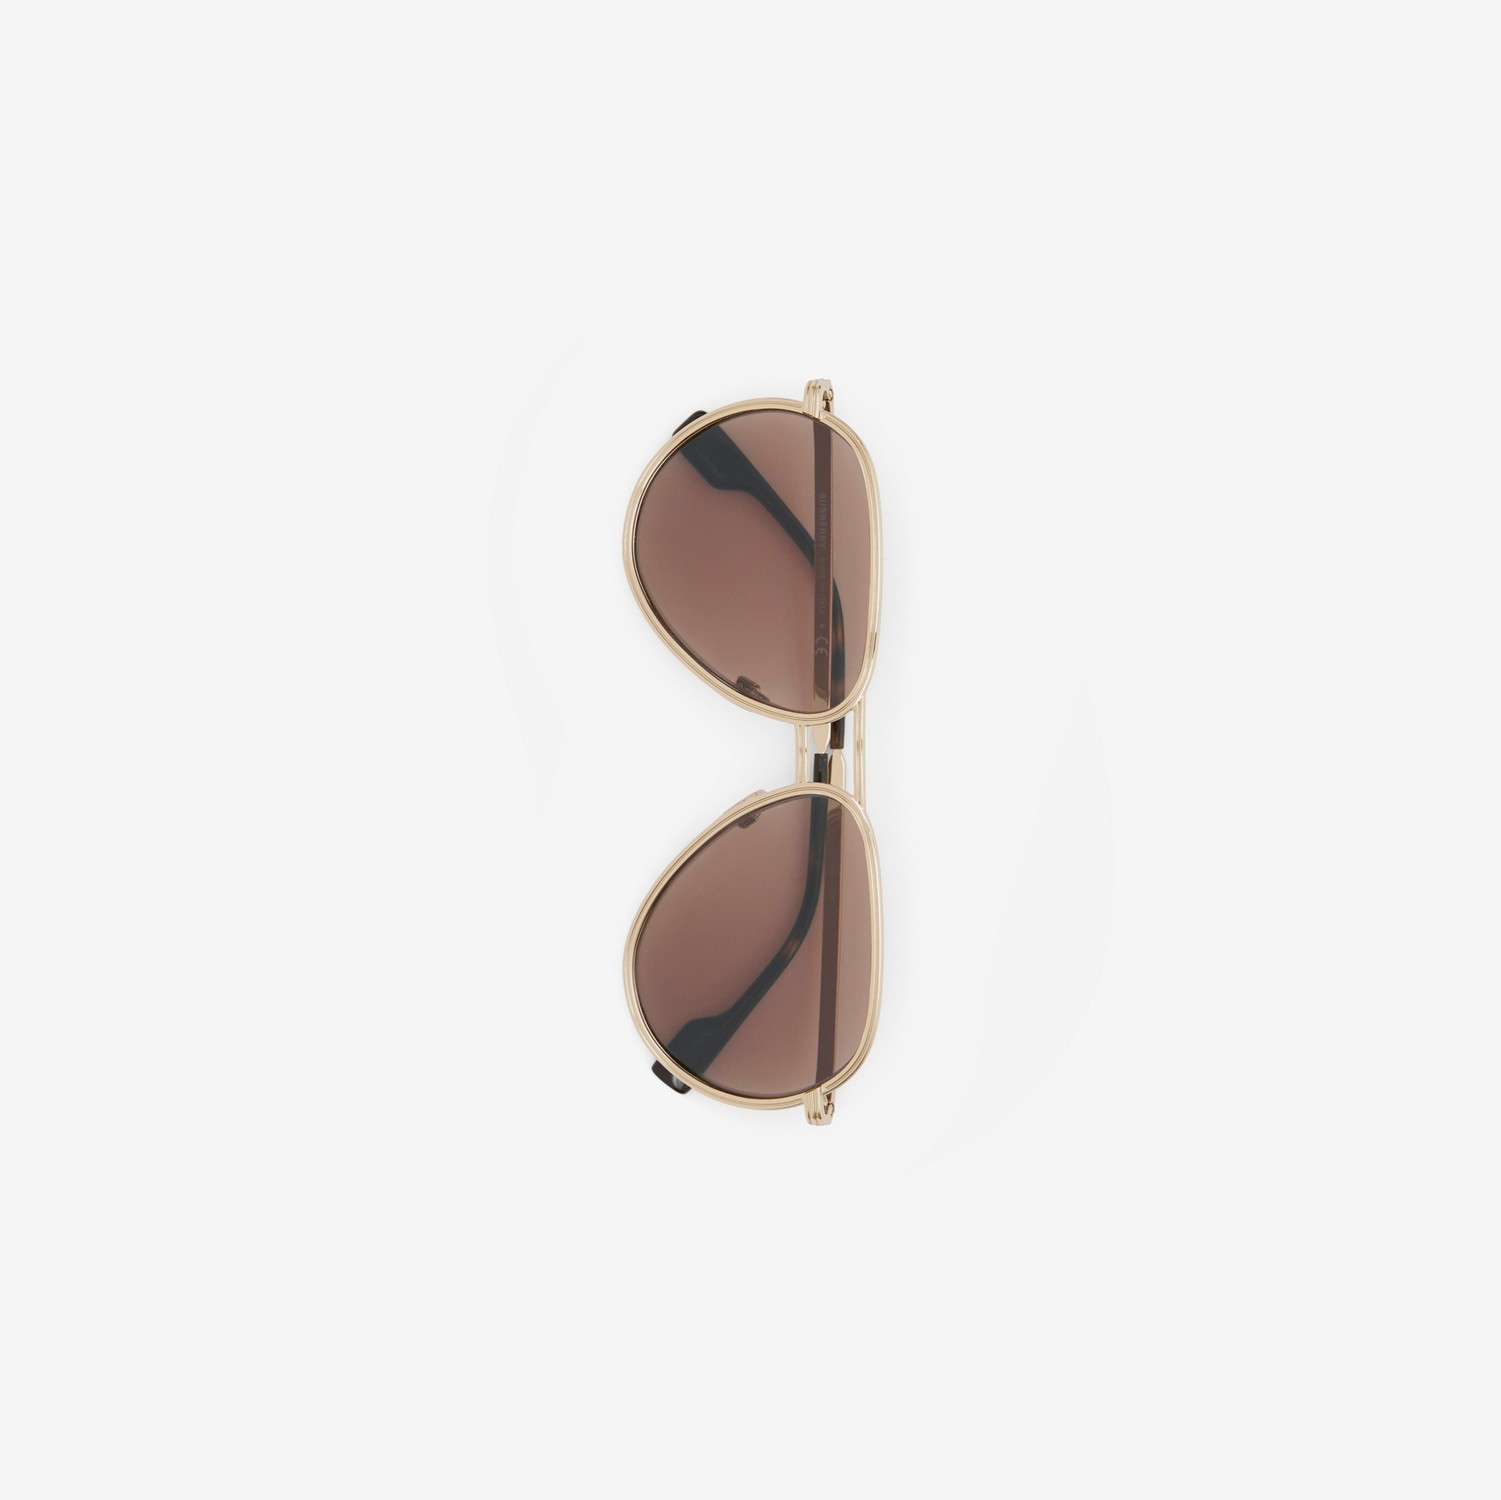 Pilot Sunglasses in Dark Brown - Men | Burberry® Official